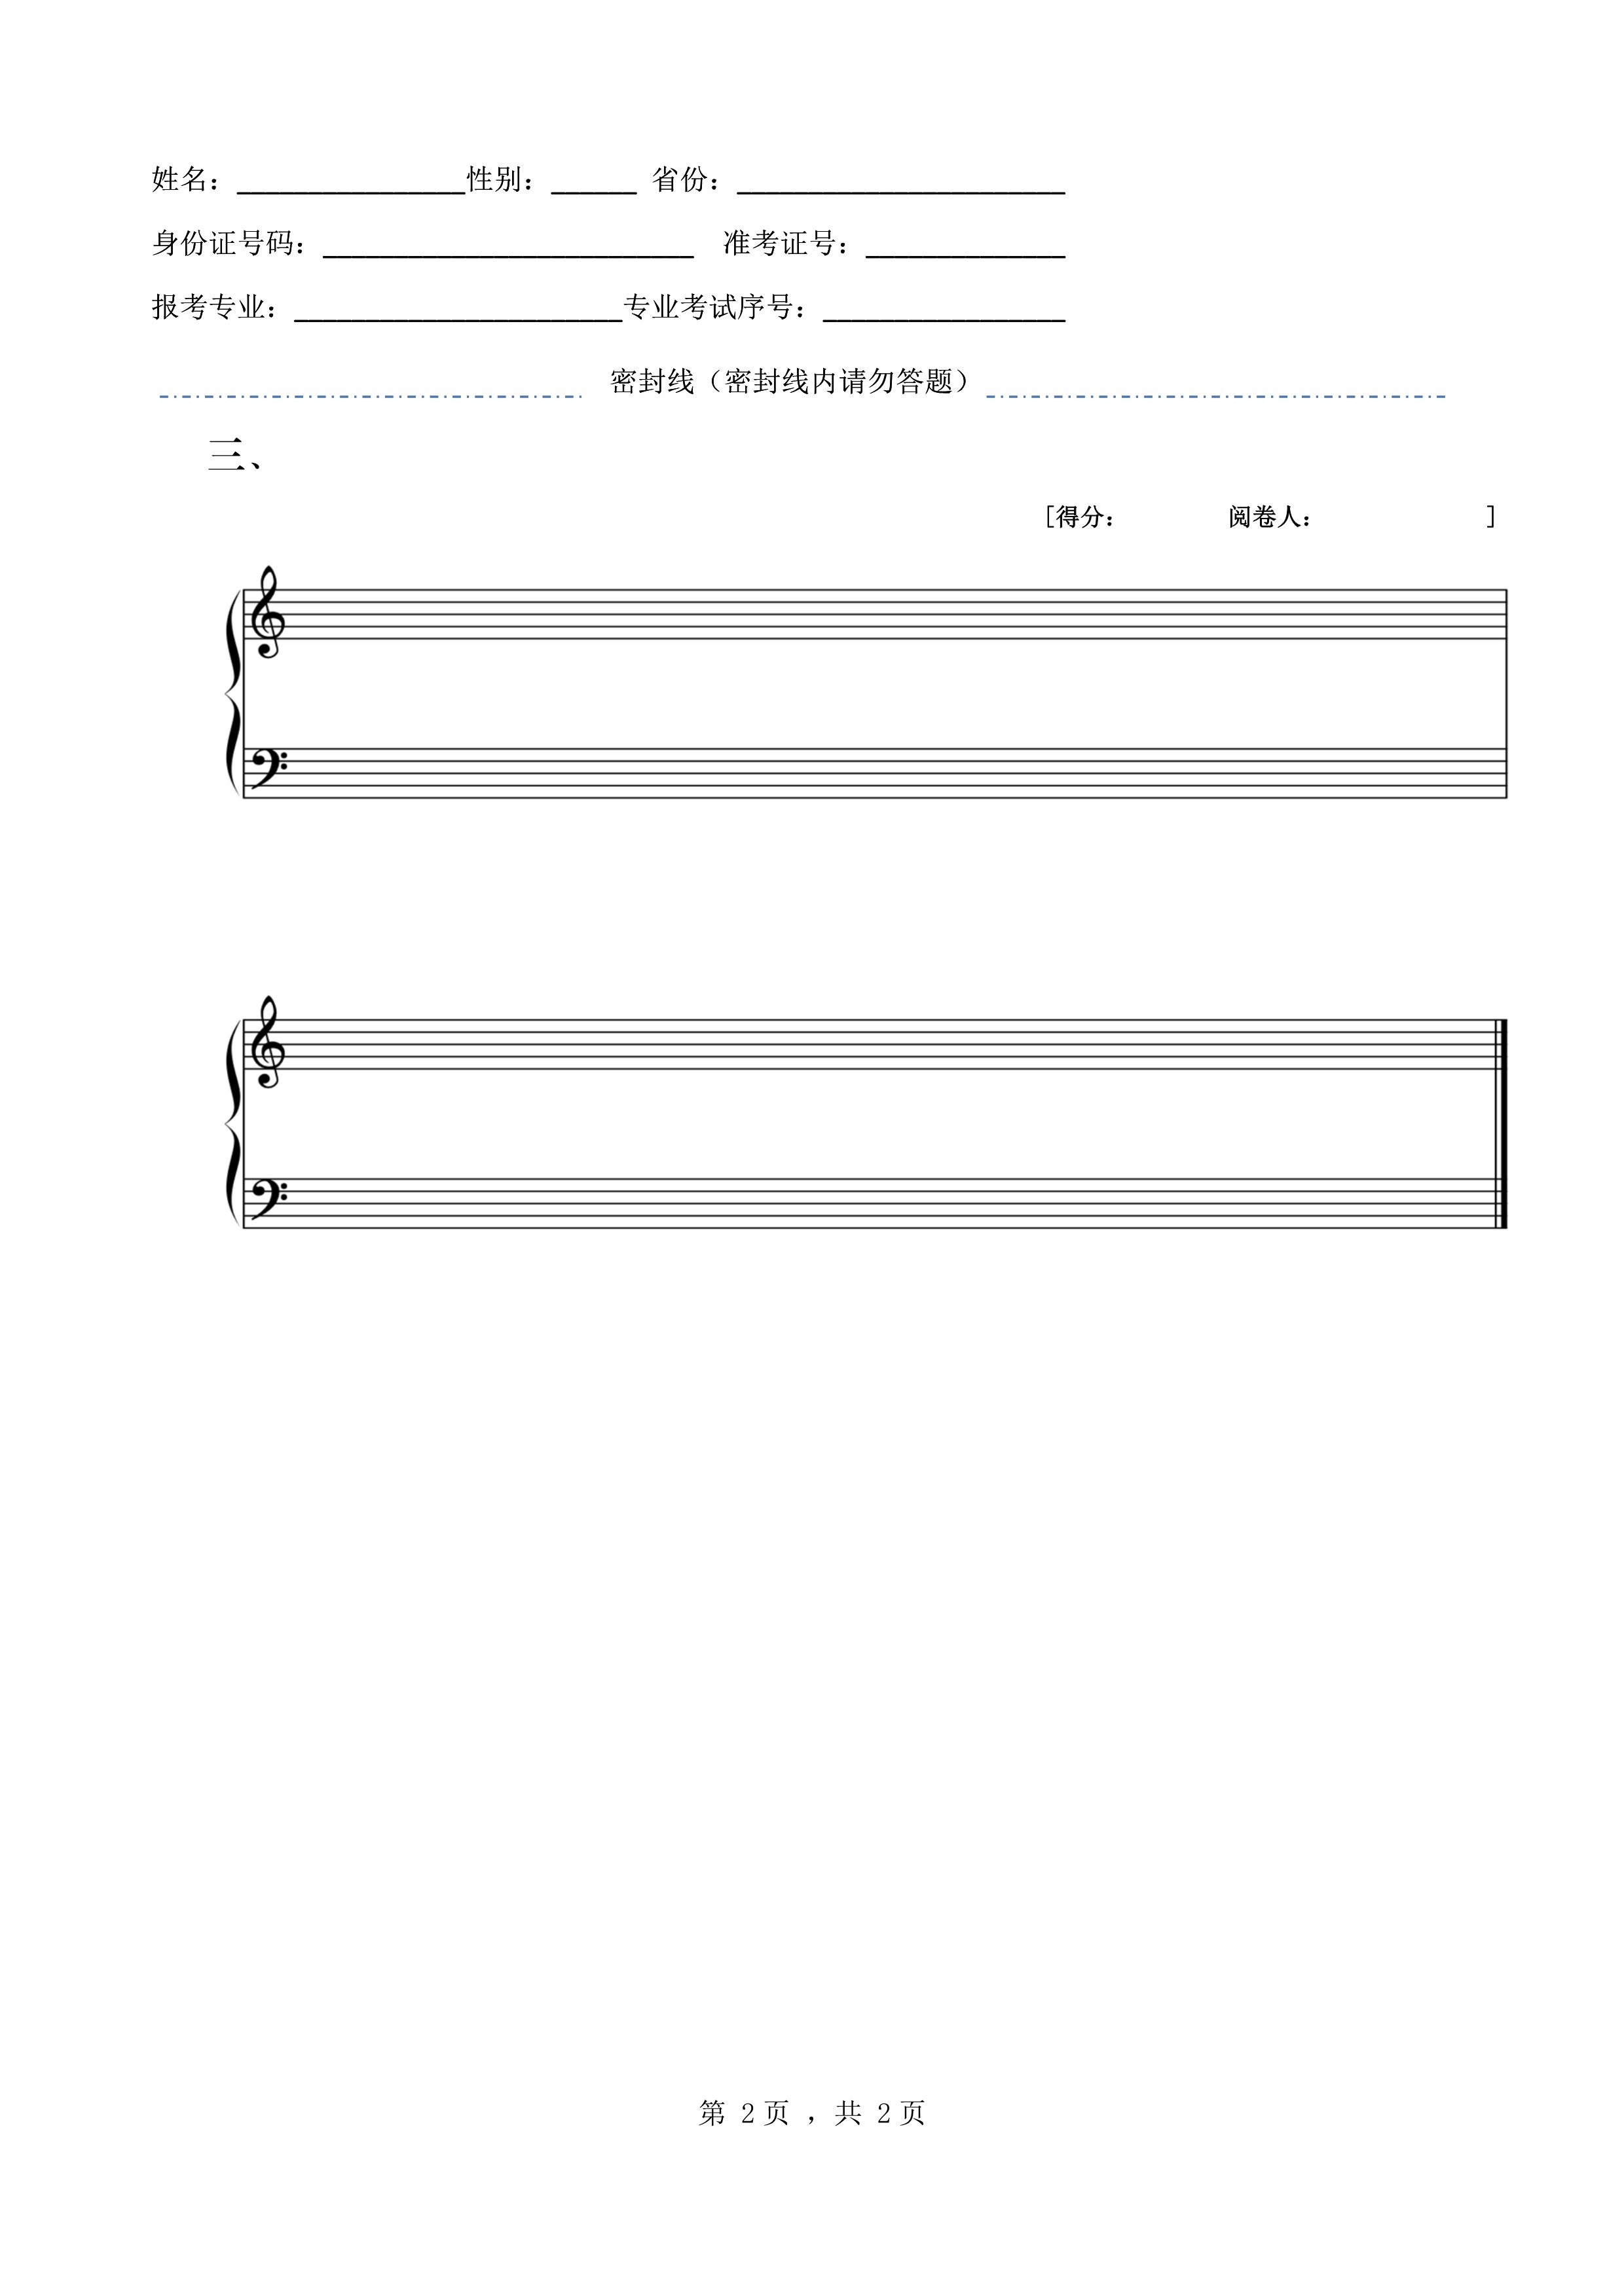 南京艺术学院2022年本科招生作曲与作曲技术理论（流行创作）专业《和声》科目考试答题纸_2.jpg